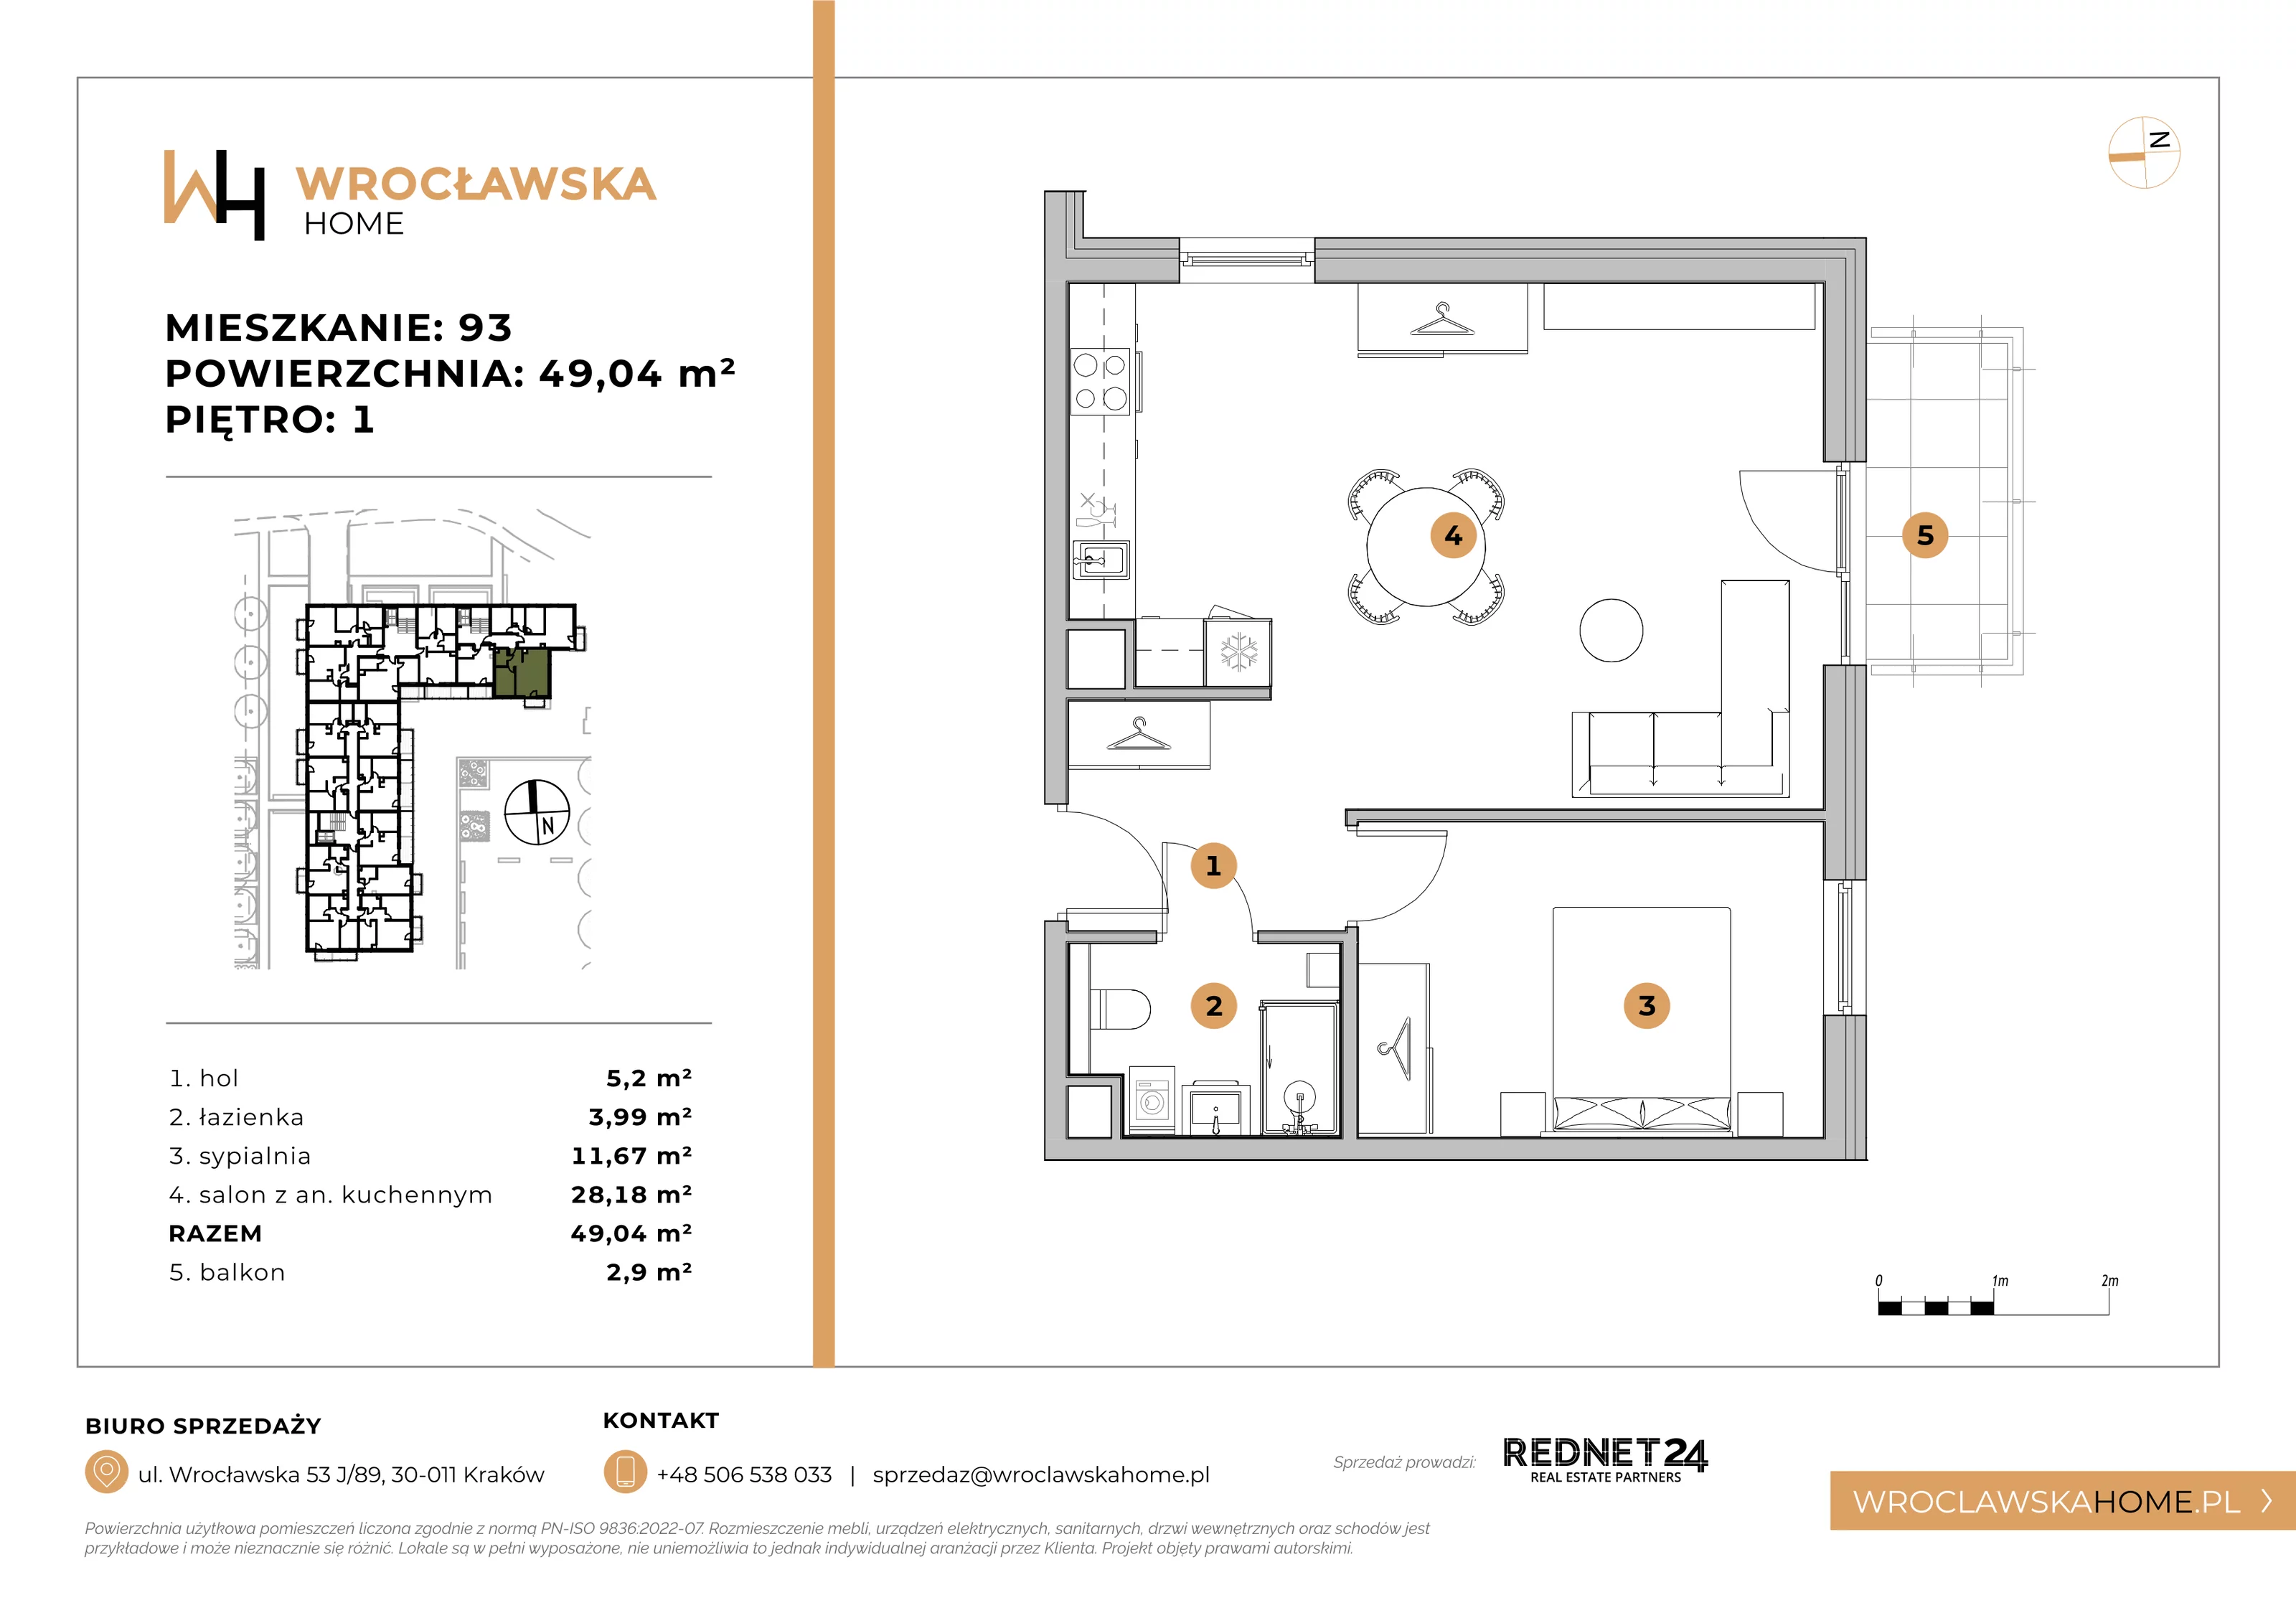 Mieszkanie 49,04 m², piętro 1, oferta nr 93, Wrocławska HOME, Kraków, Krowodrza, ul. Wrocławska 53J	